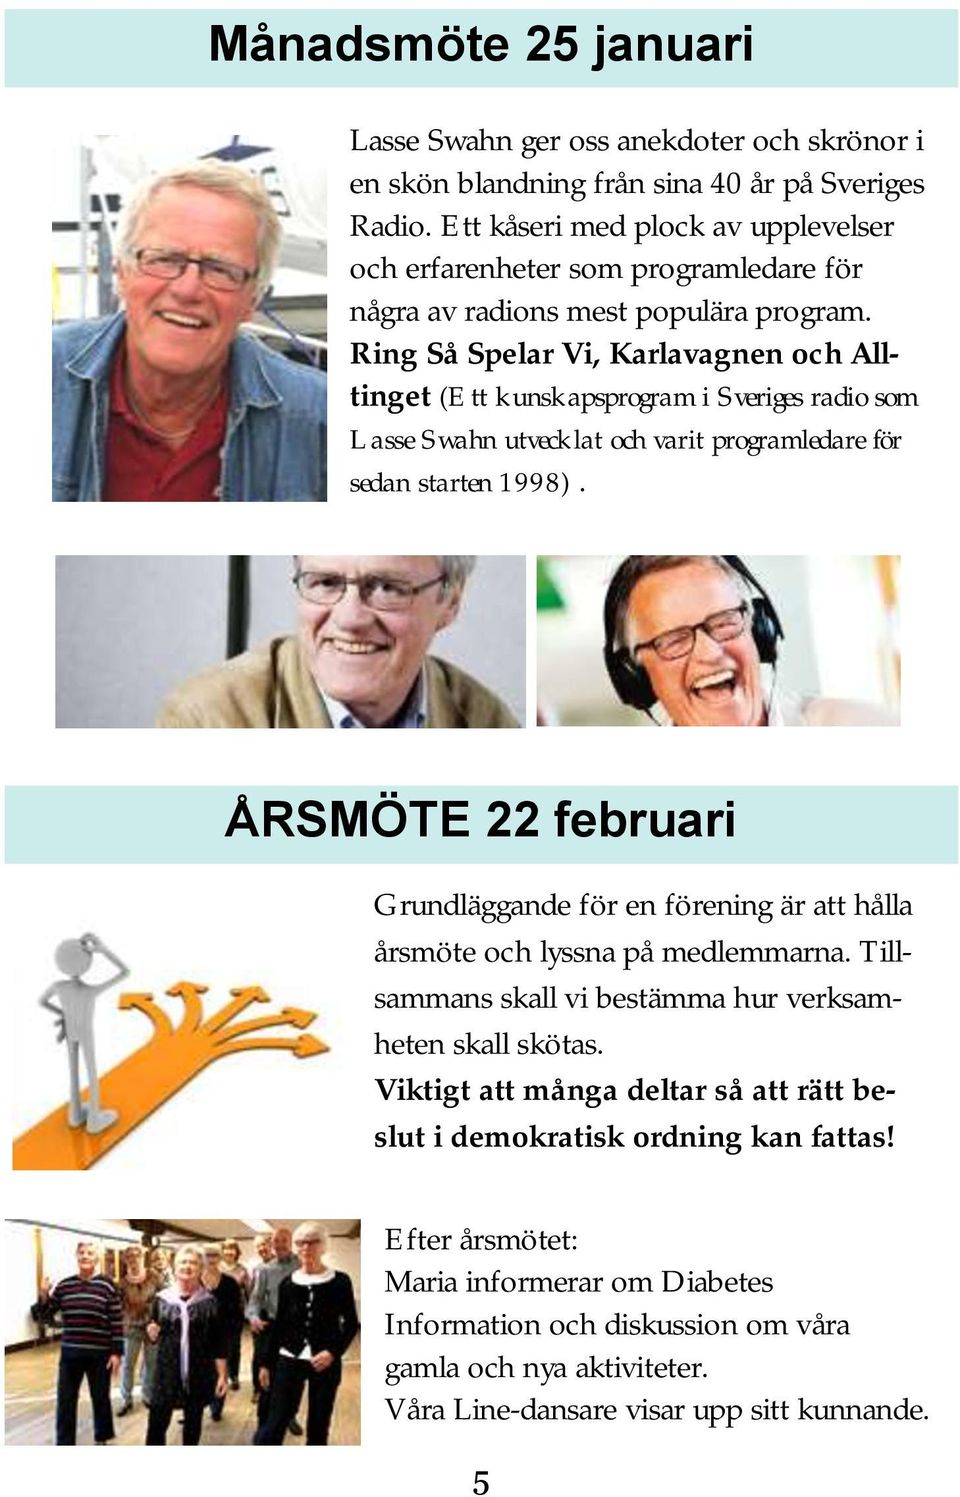 Ring Så Spelar Vi, Karlavagnen och Alltinget (Ett kunskapsprogram i Sveriges radio som Lasse Swahn utvecklat och varit programledare för sedan starten 1998).